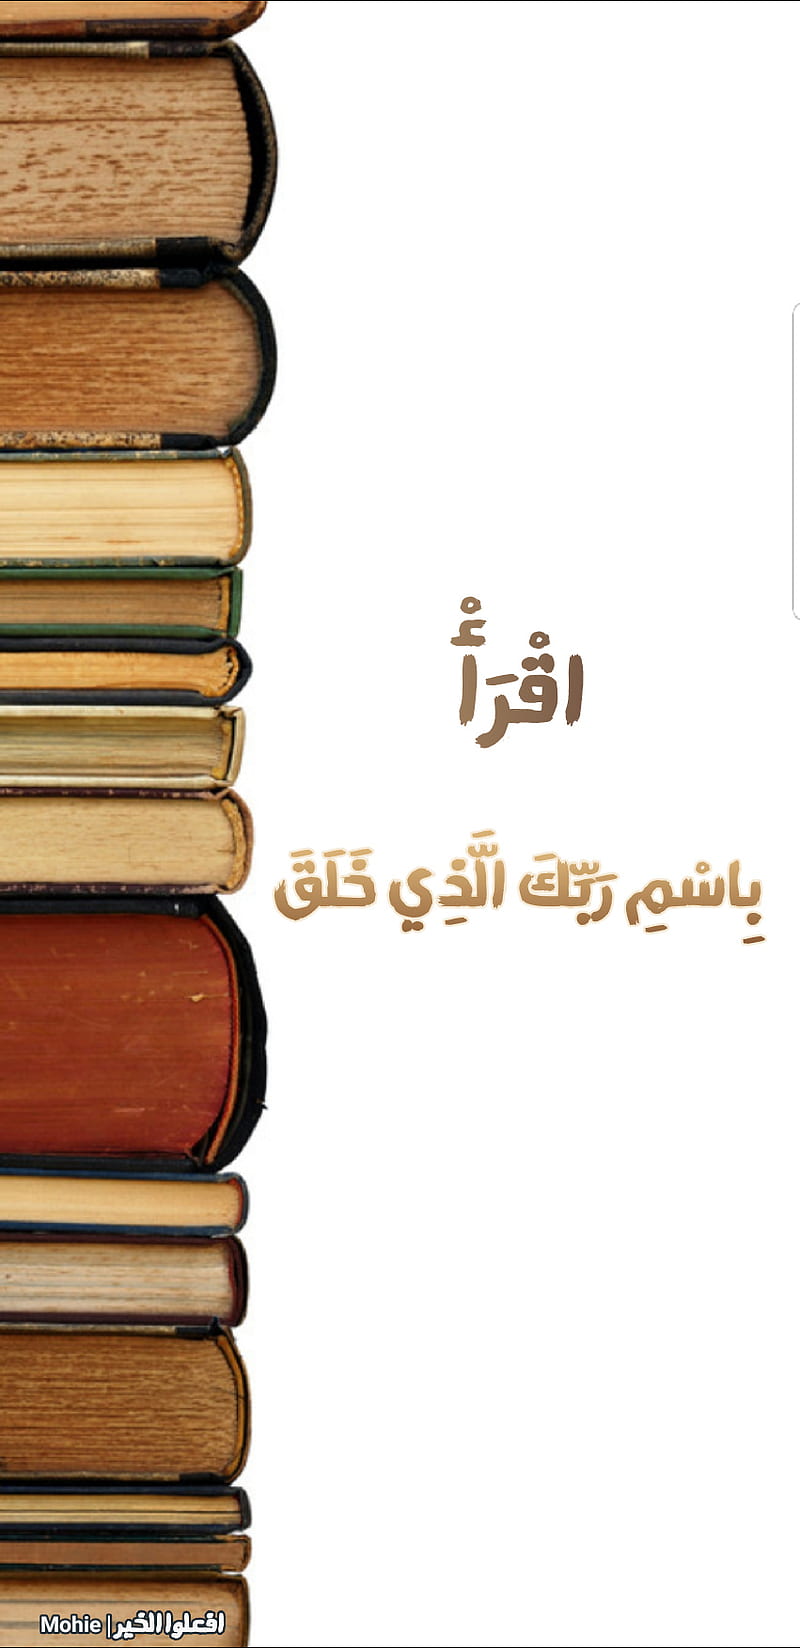 Quran, arab, arabic, islam, islamic, muslim, essam, simple, HD phone wallpaper